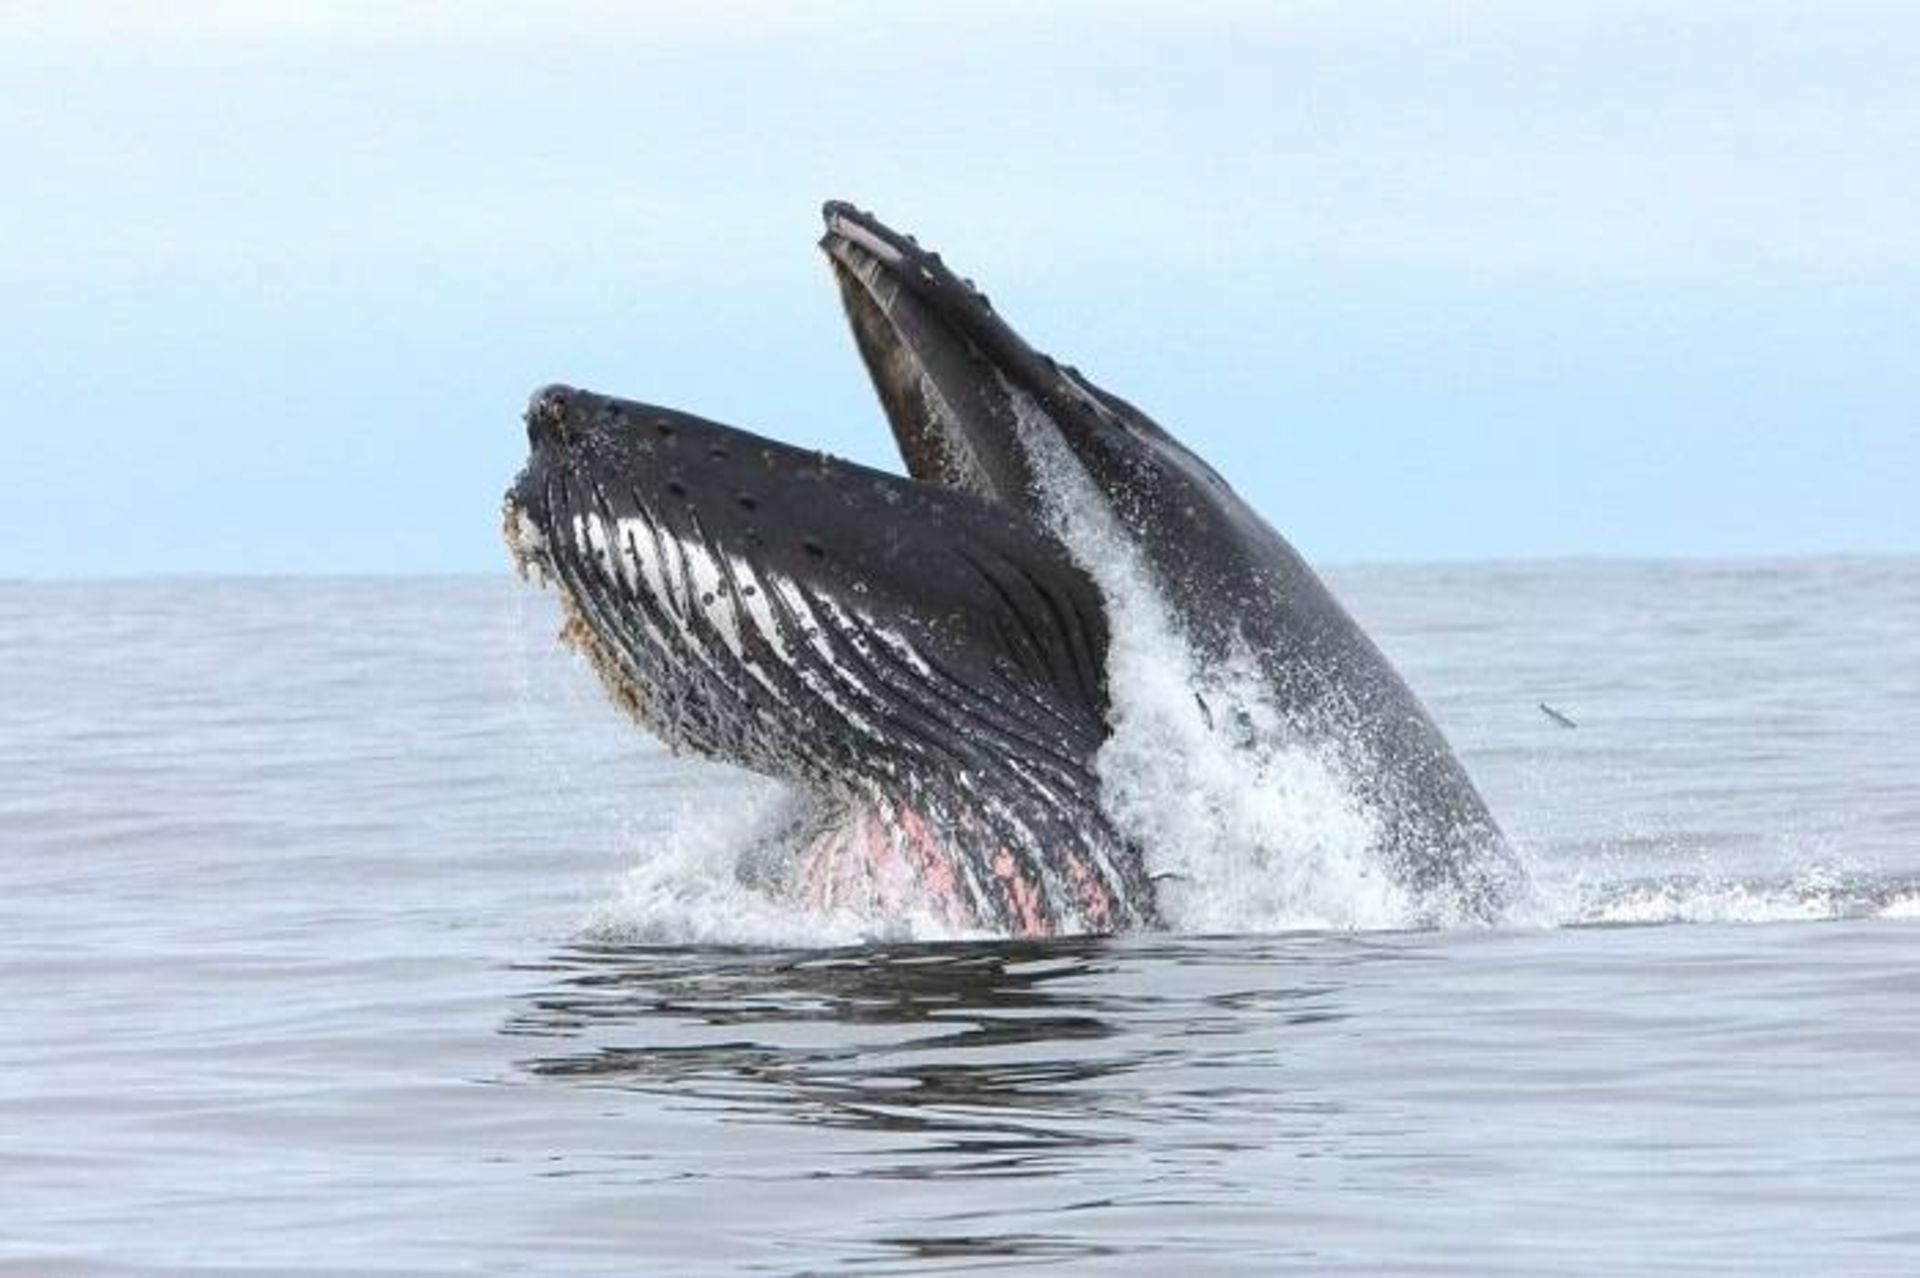 نهنگ گوژپشت در آب های کانادا / humpback whale